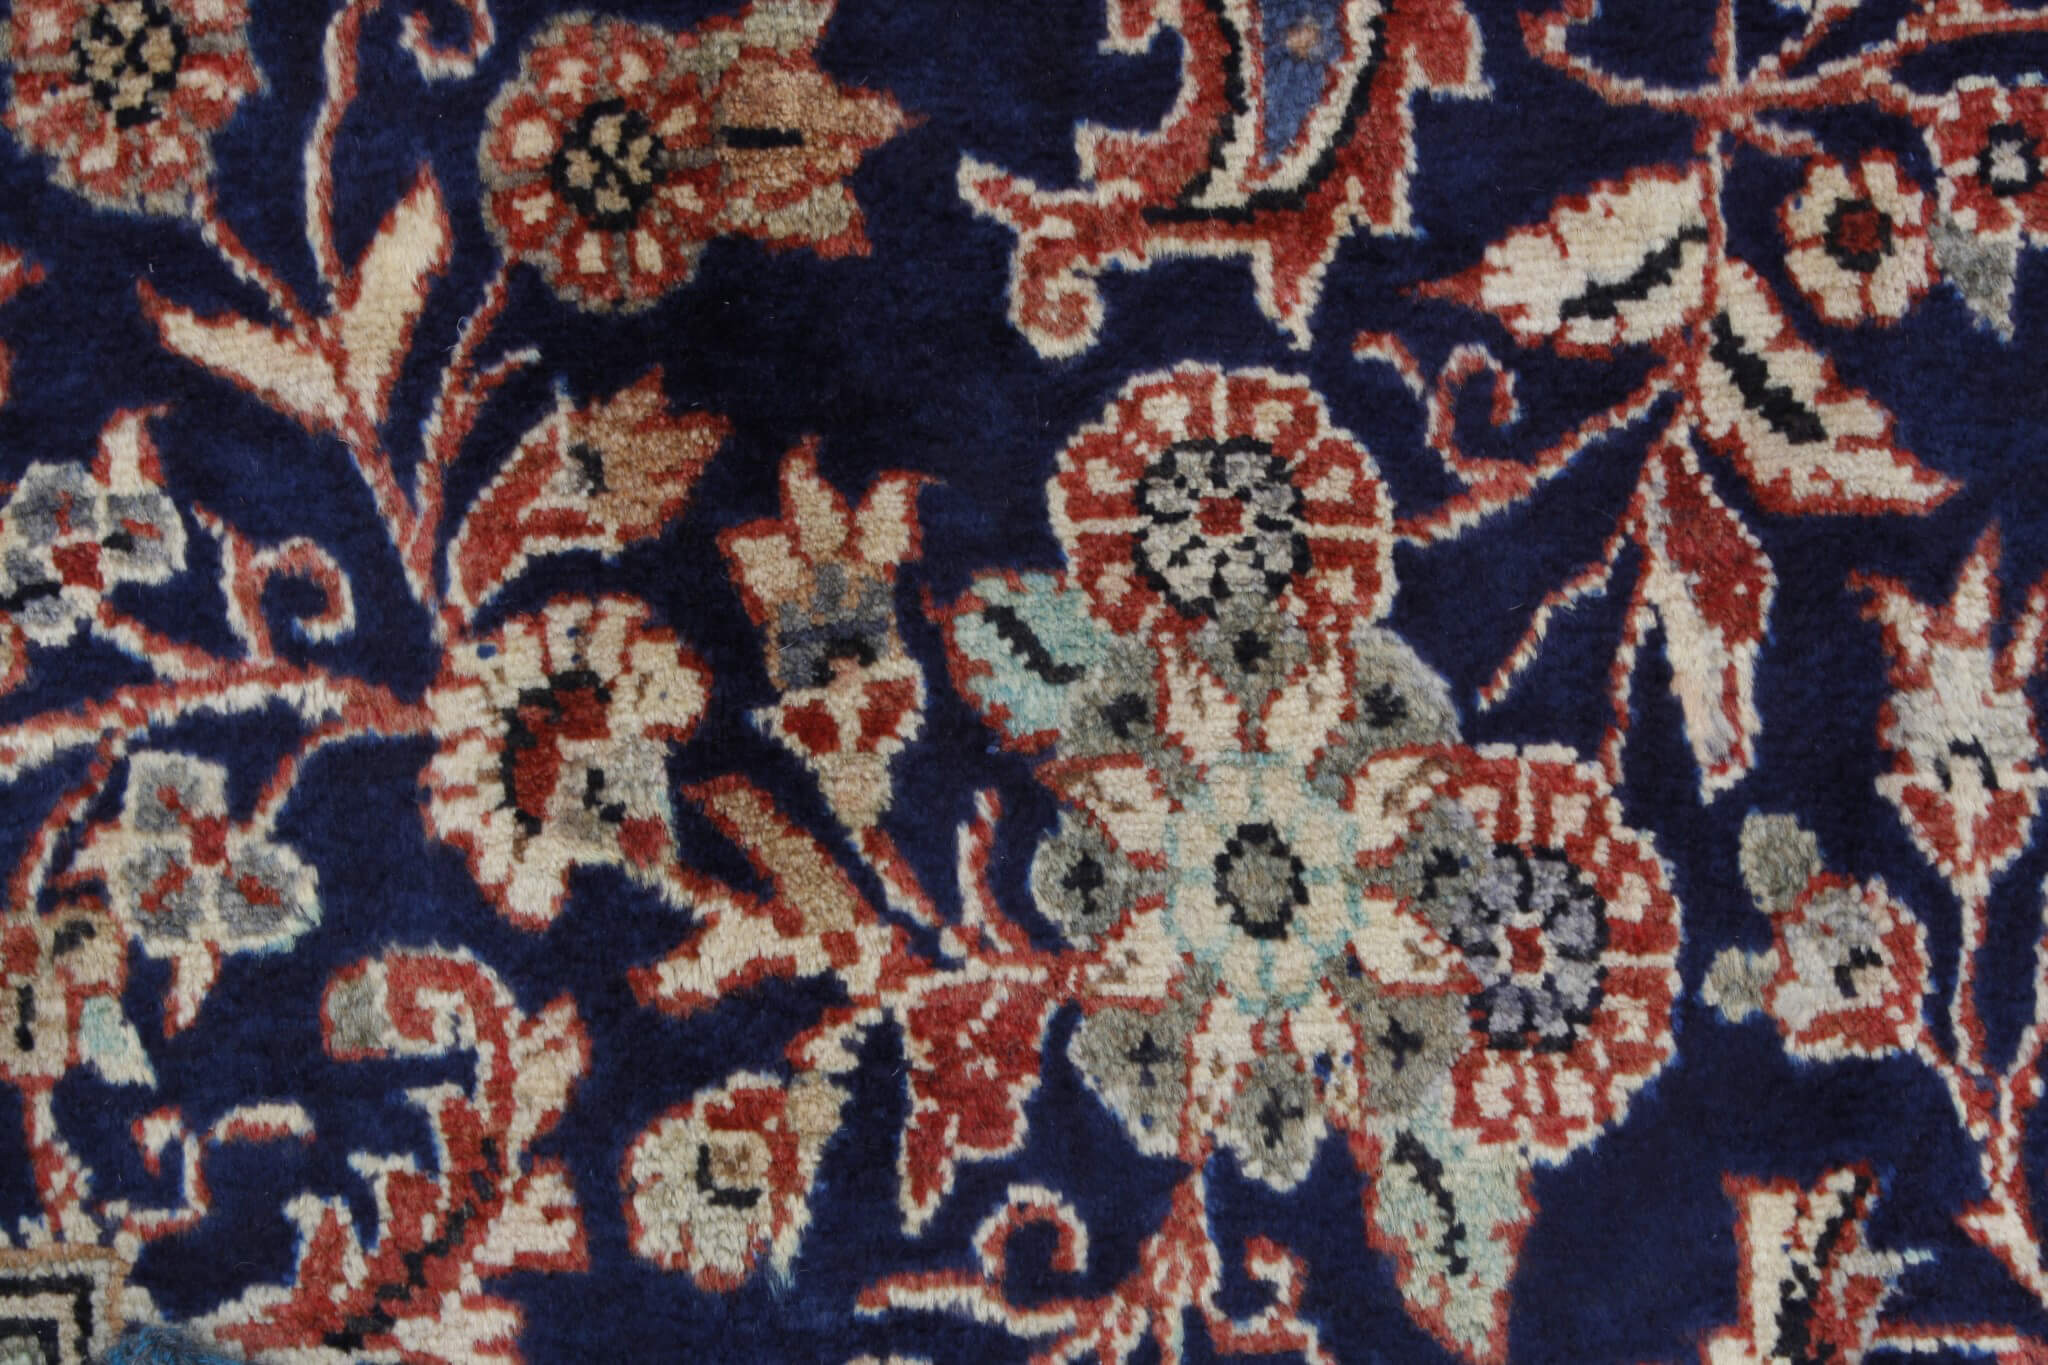 Persian rug Hamadan